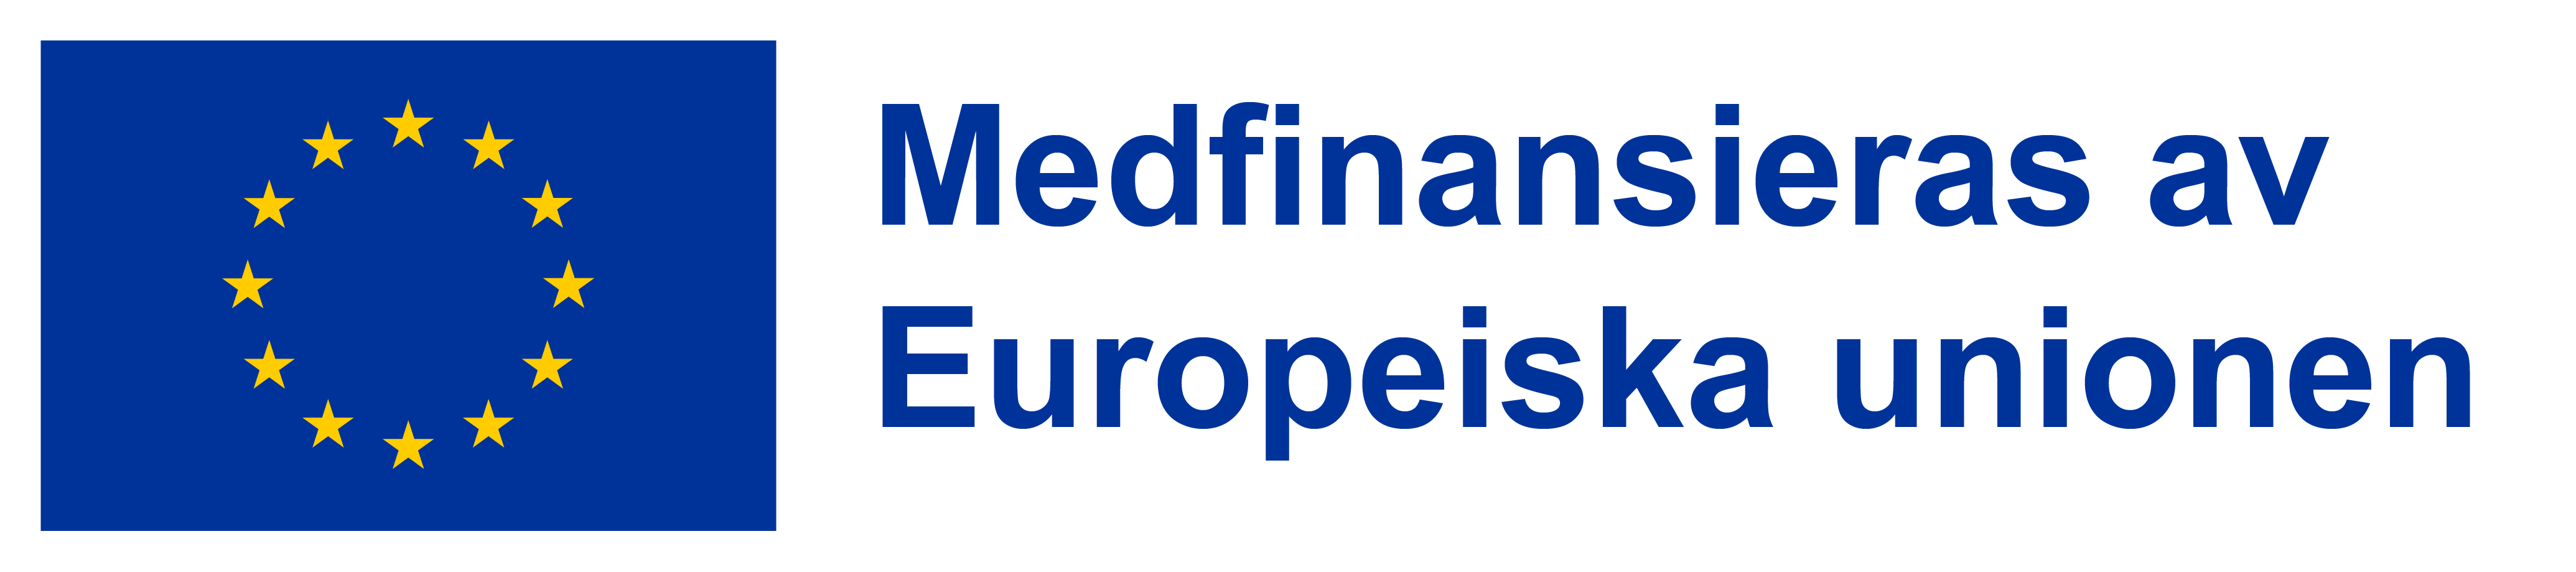 EU-flaggan tillsammans med texten Medfinansieras av Europeiska unionen